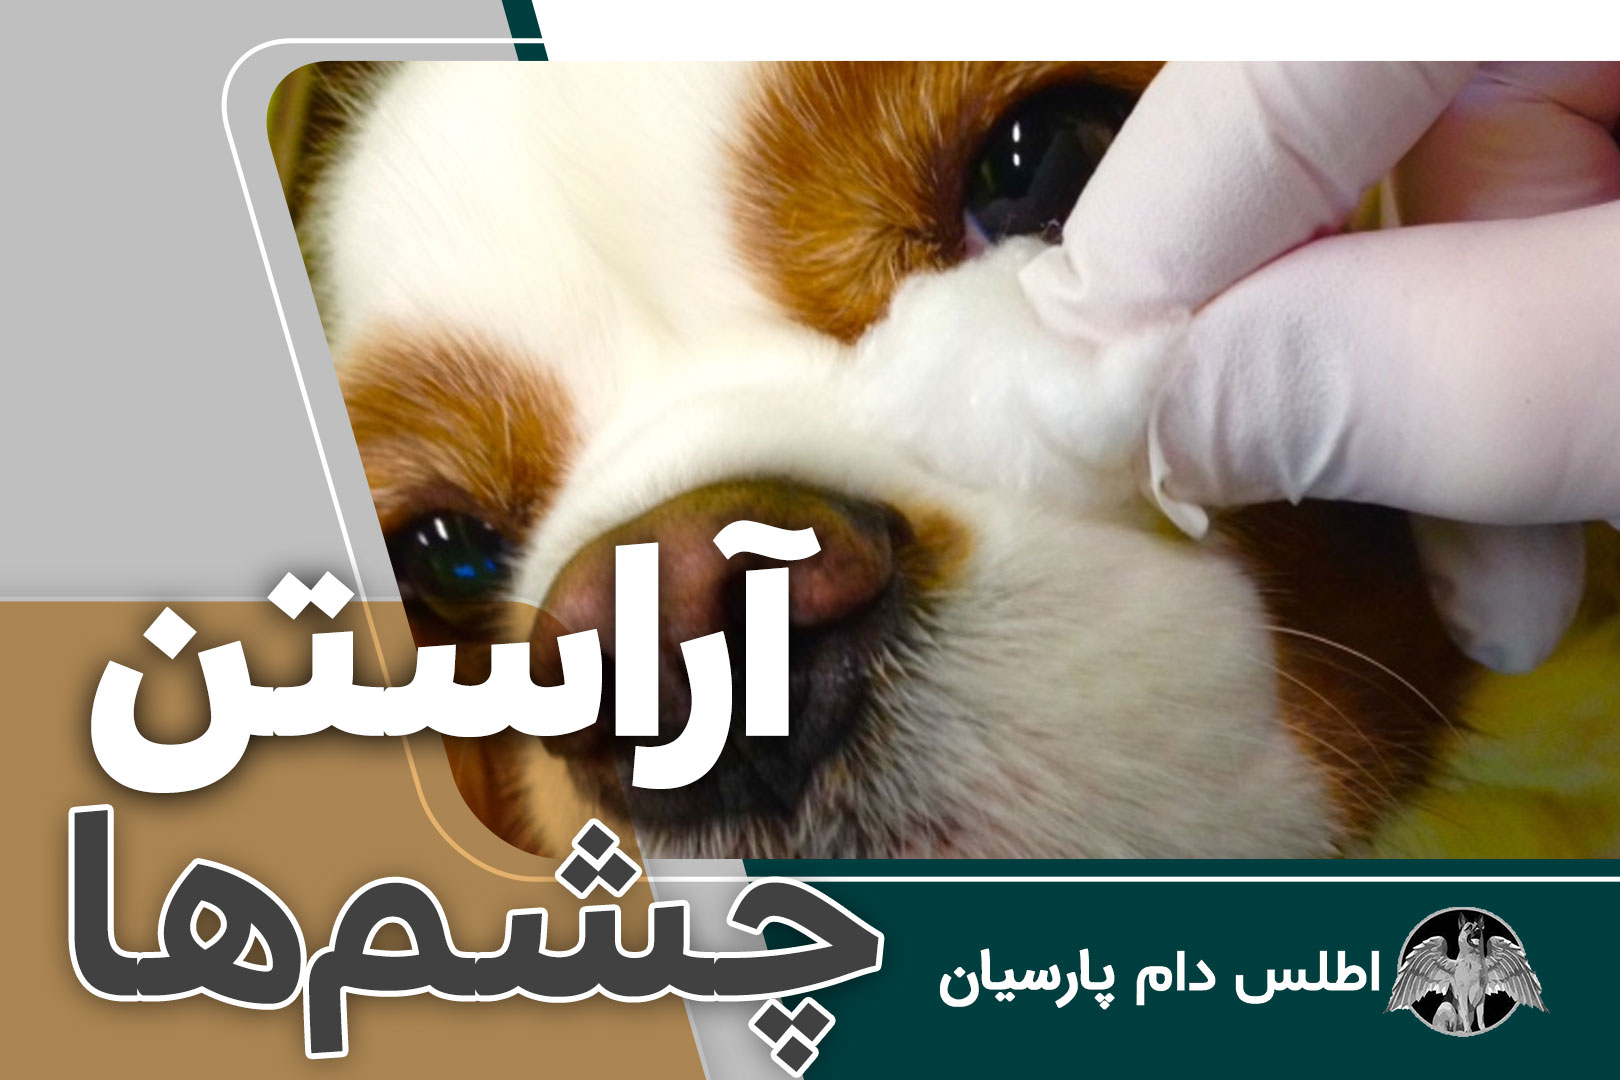 آموزش تمیز کردن چشم سگ ها (بهداشت چشم سگ)